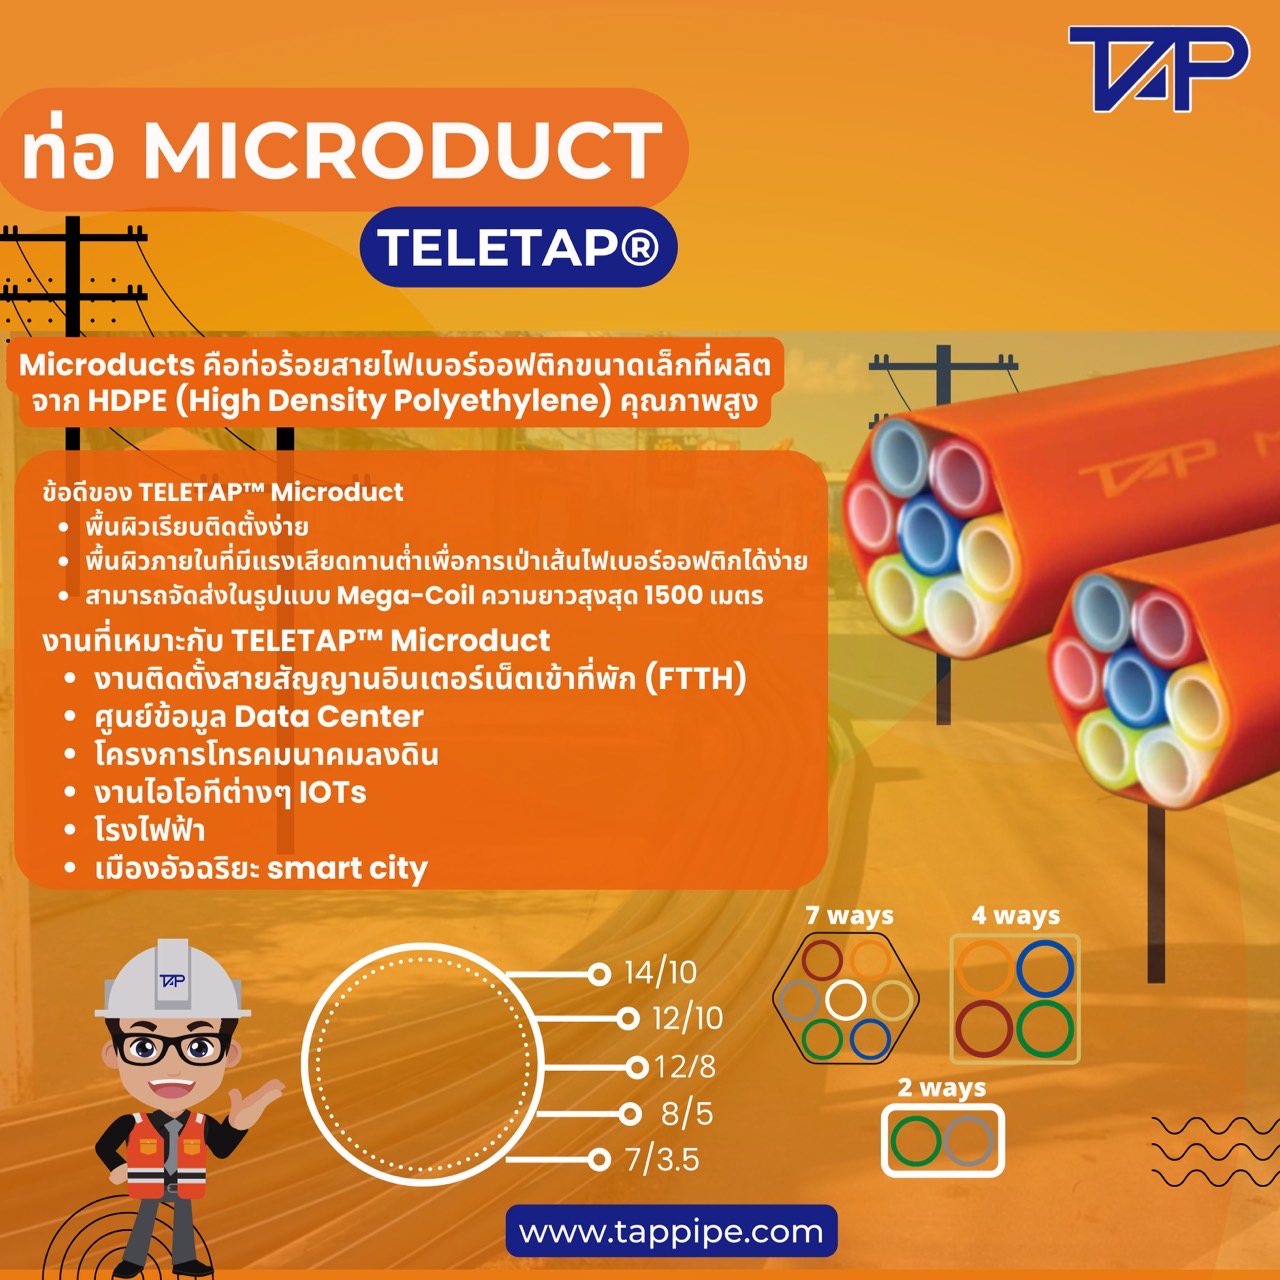 microduct teletap